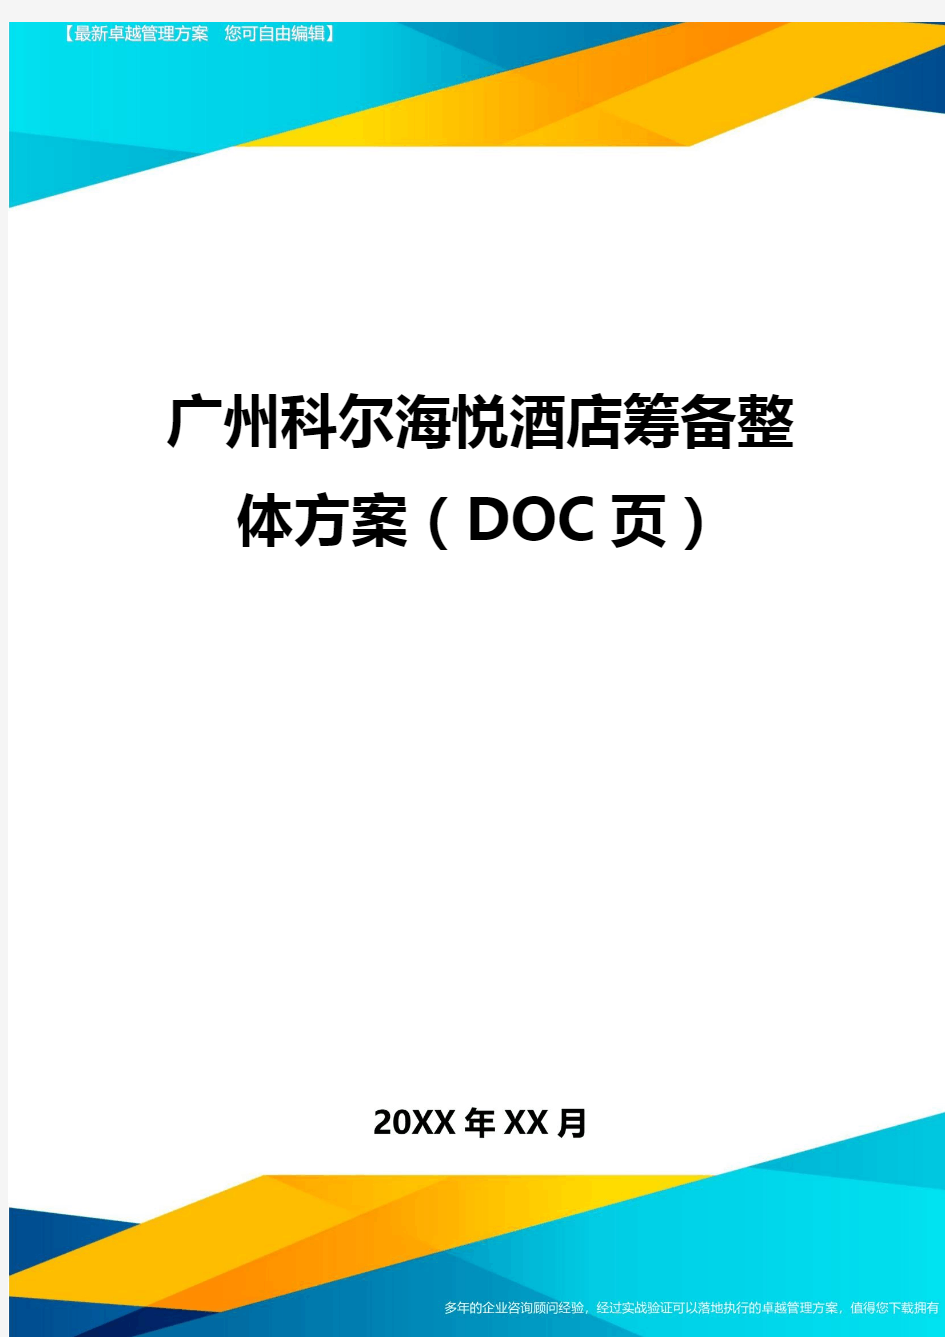 (2020)年广州科尔海悦酒店筹备整体方案(DOC页)